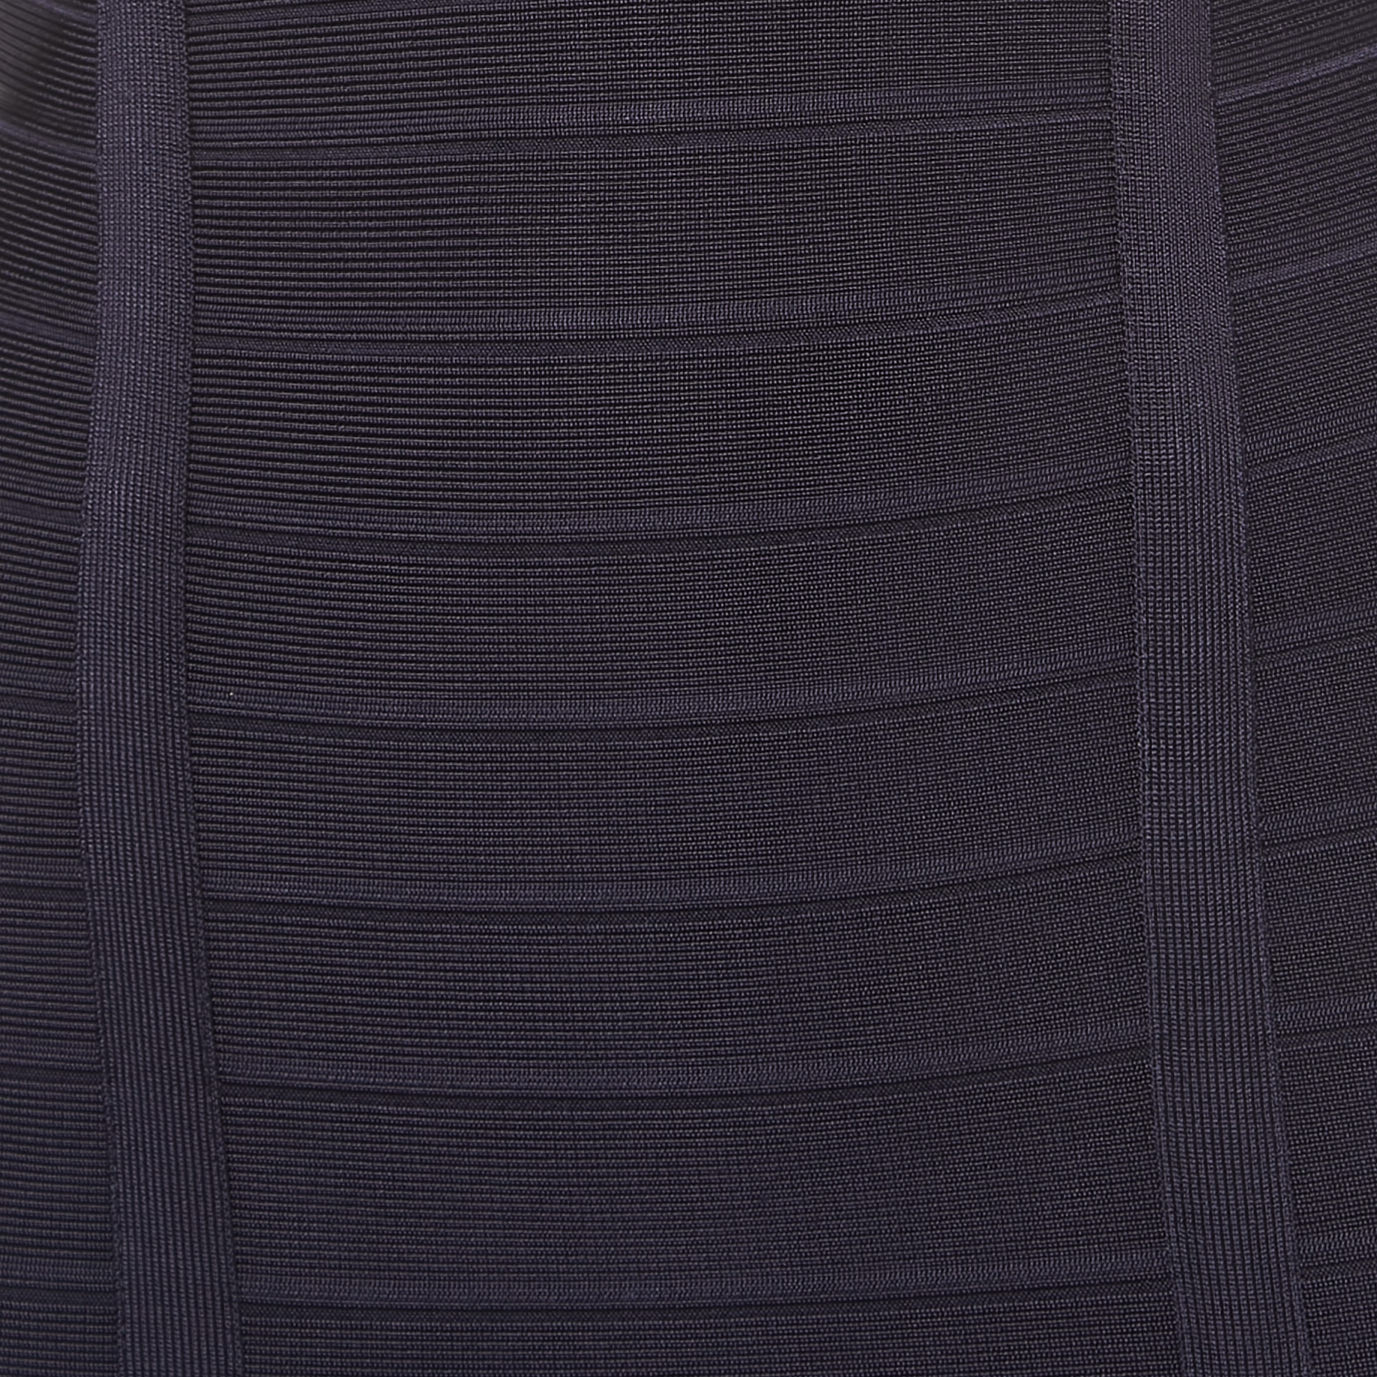 Herve Leger Navy Blue Knit Darby Bandage Dress S